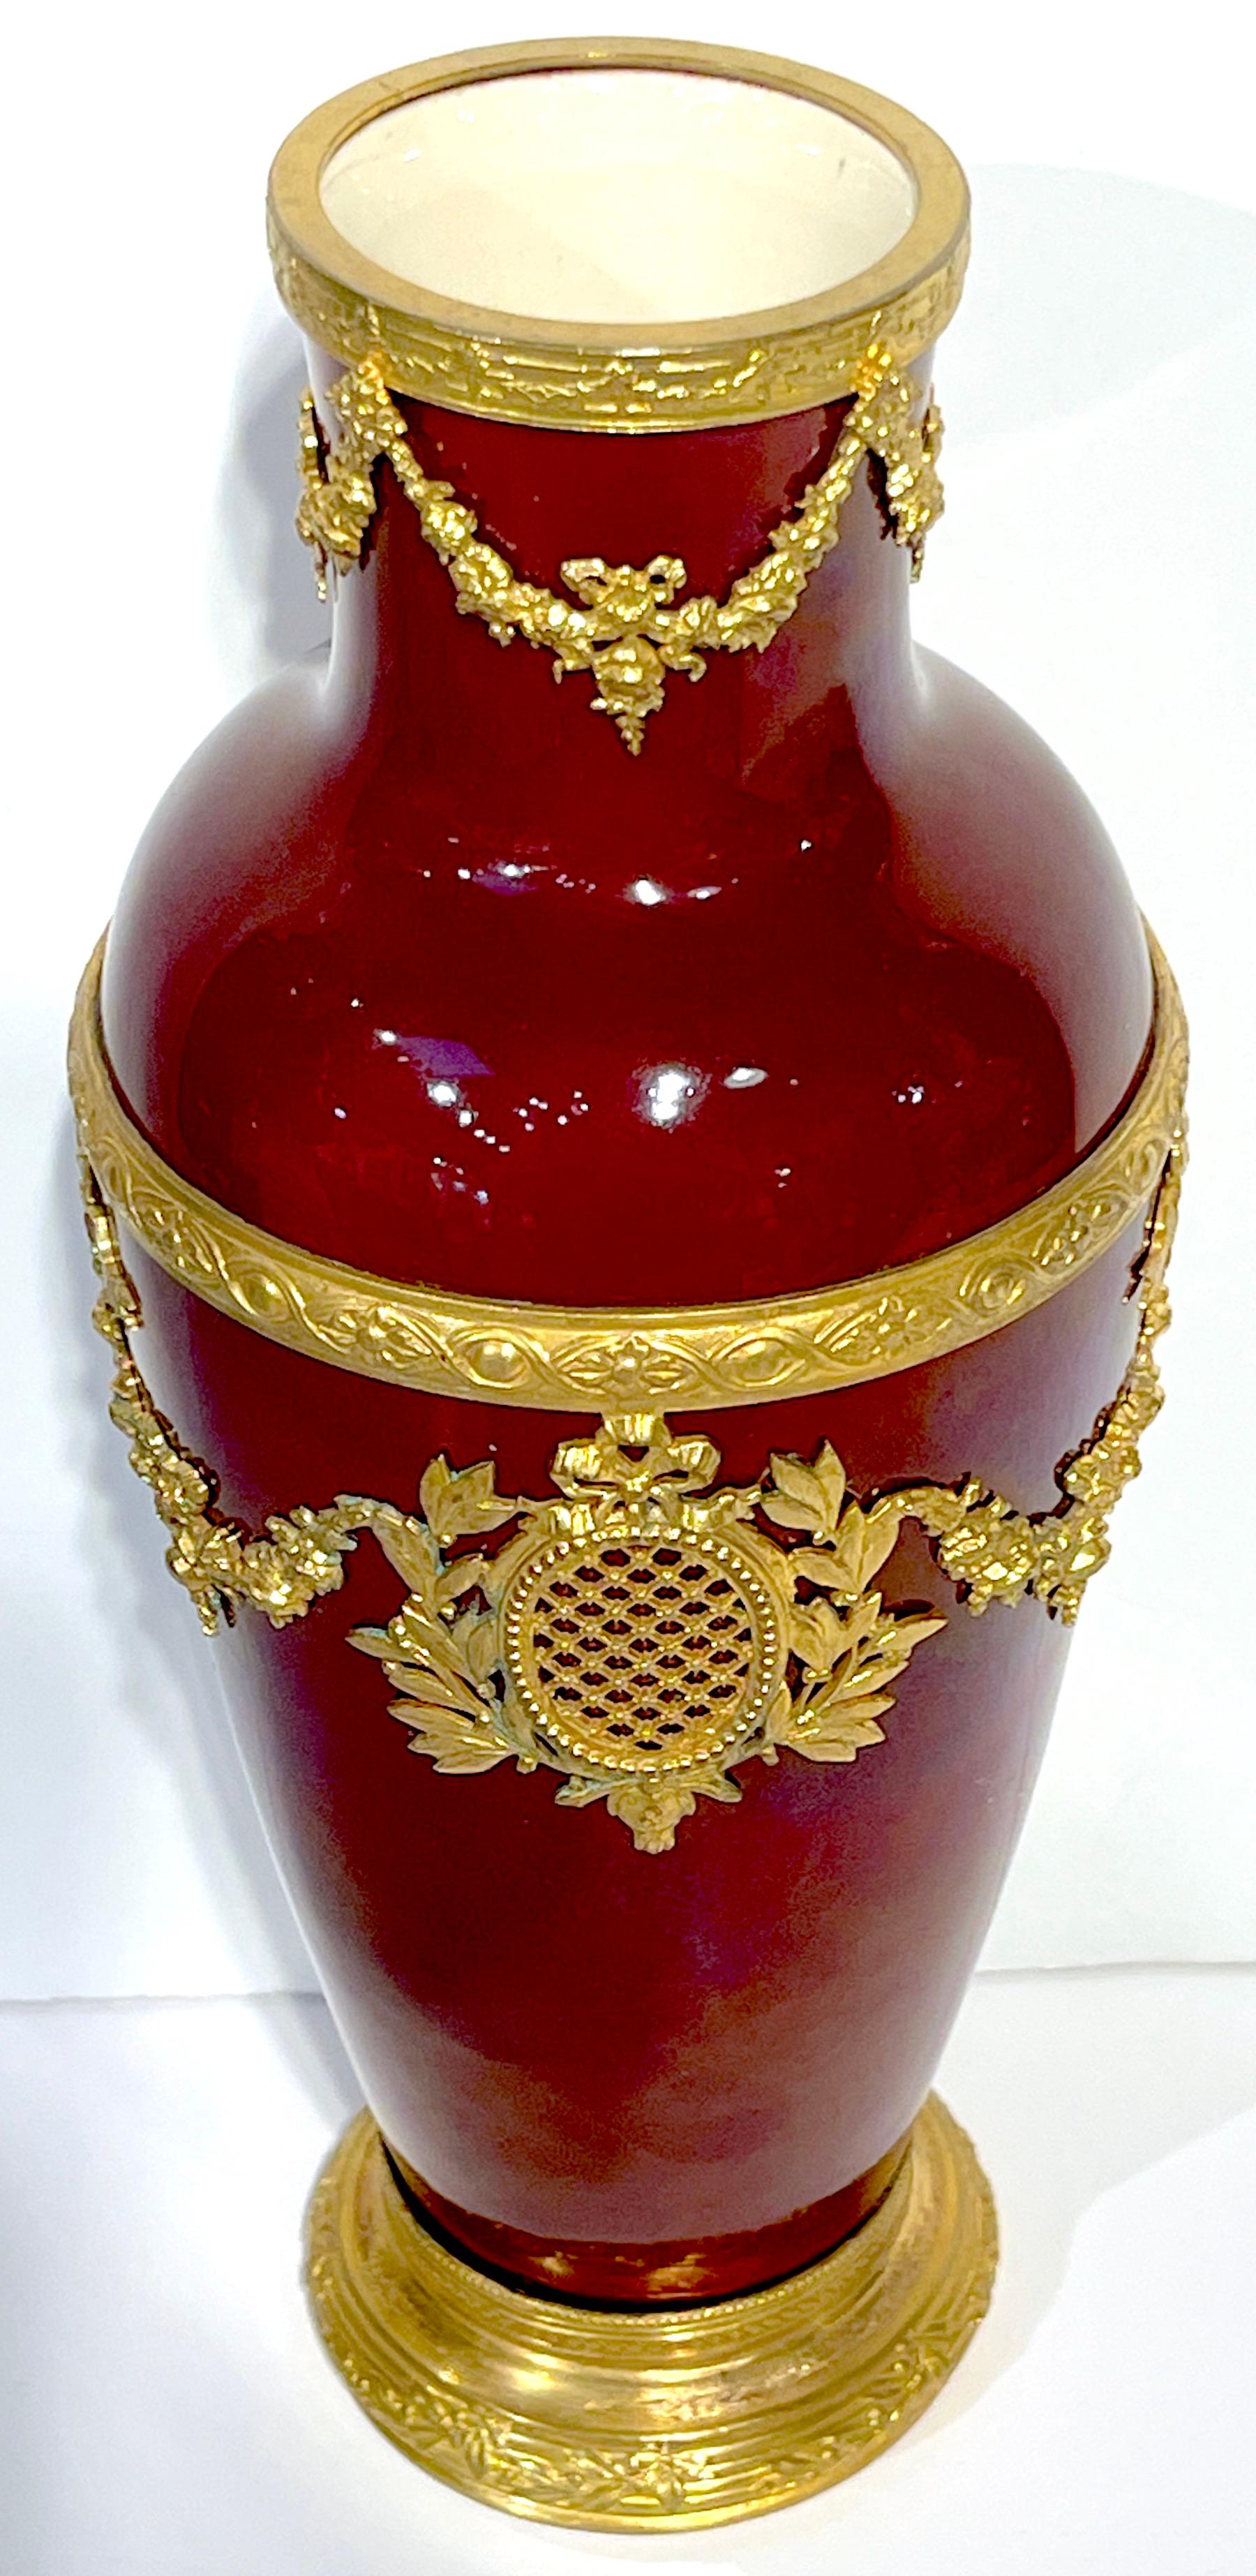 Paul Milet für Sèvres Neoklassizistische Vase mit roter Flamme und Ormolu-Montierung 
Entworfen von Paul Milet (1870-1950)
Ausgeführt von Sèvres-Porzellan 

Eine schöne Vase von Paul Milet für Sèvres mit roter Flamme und Ormolu, ein Zeugnis